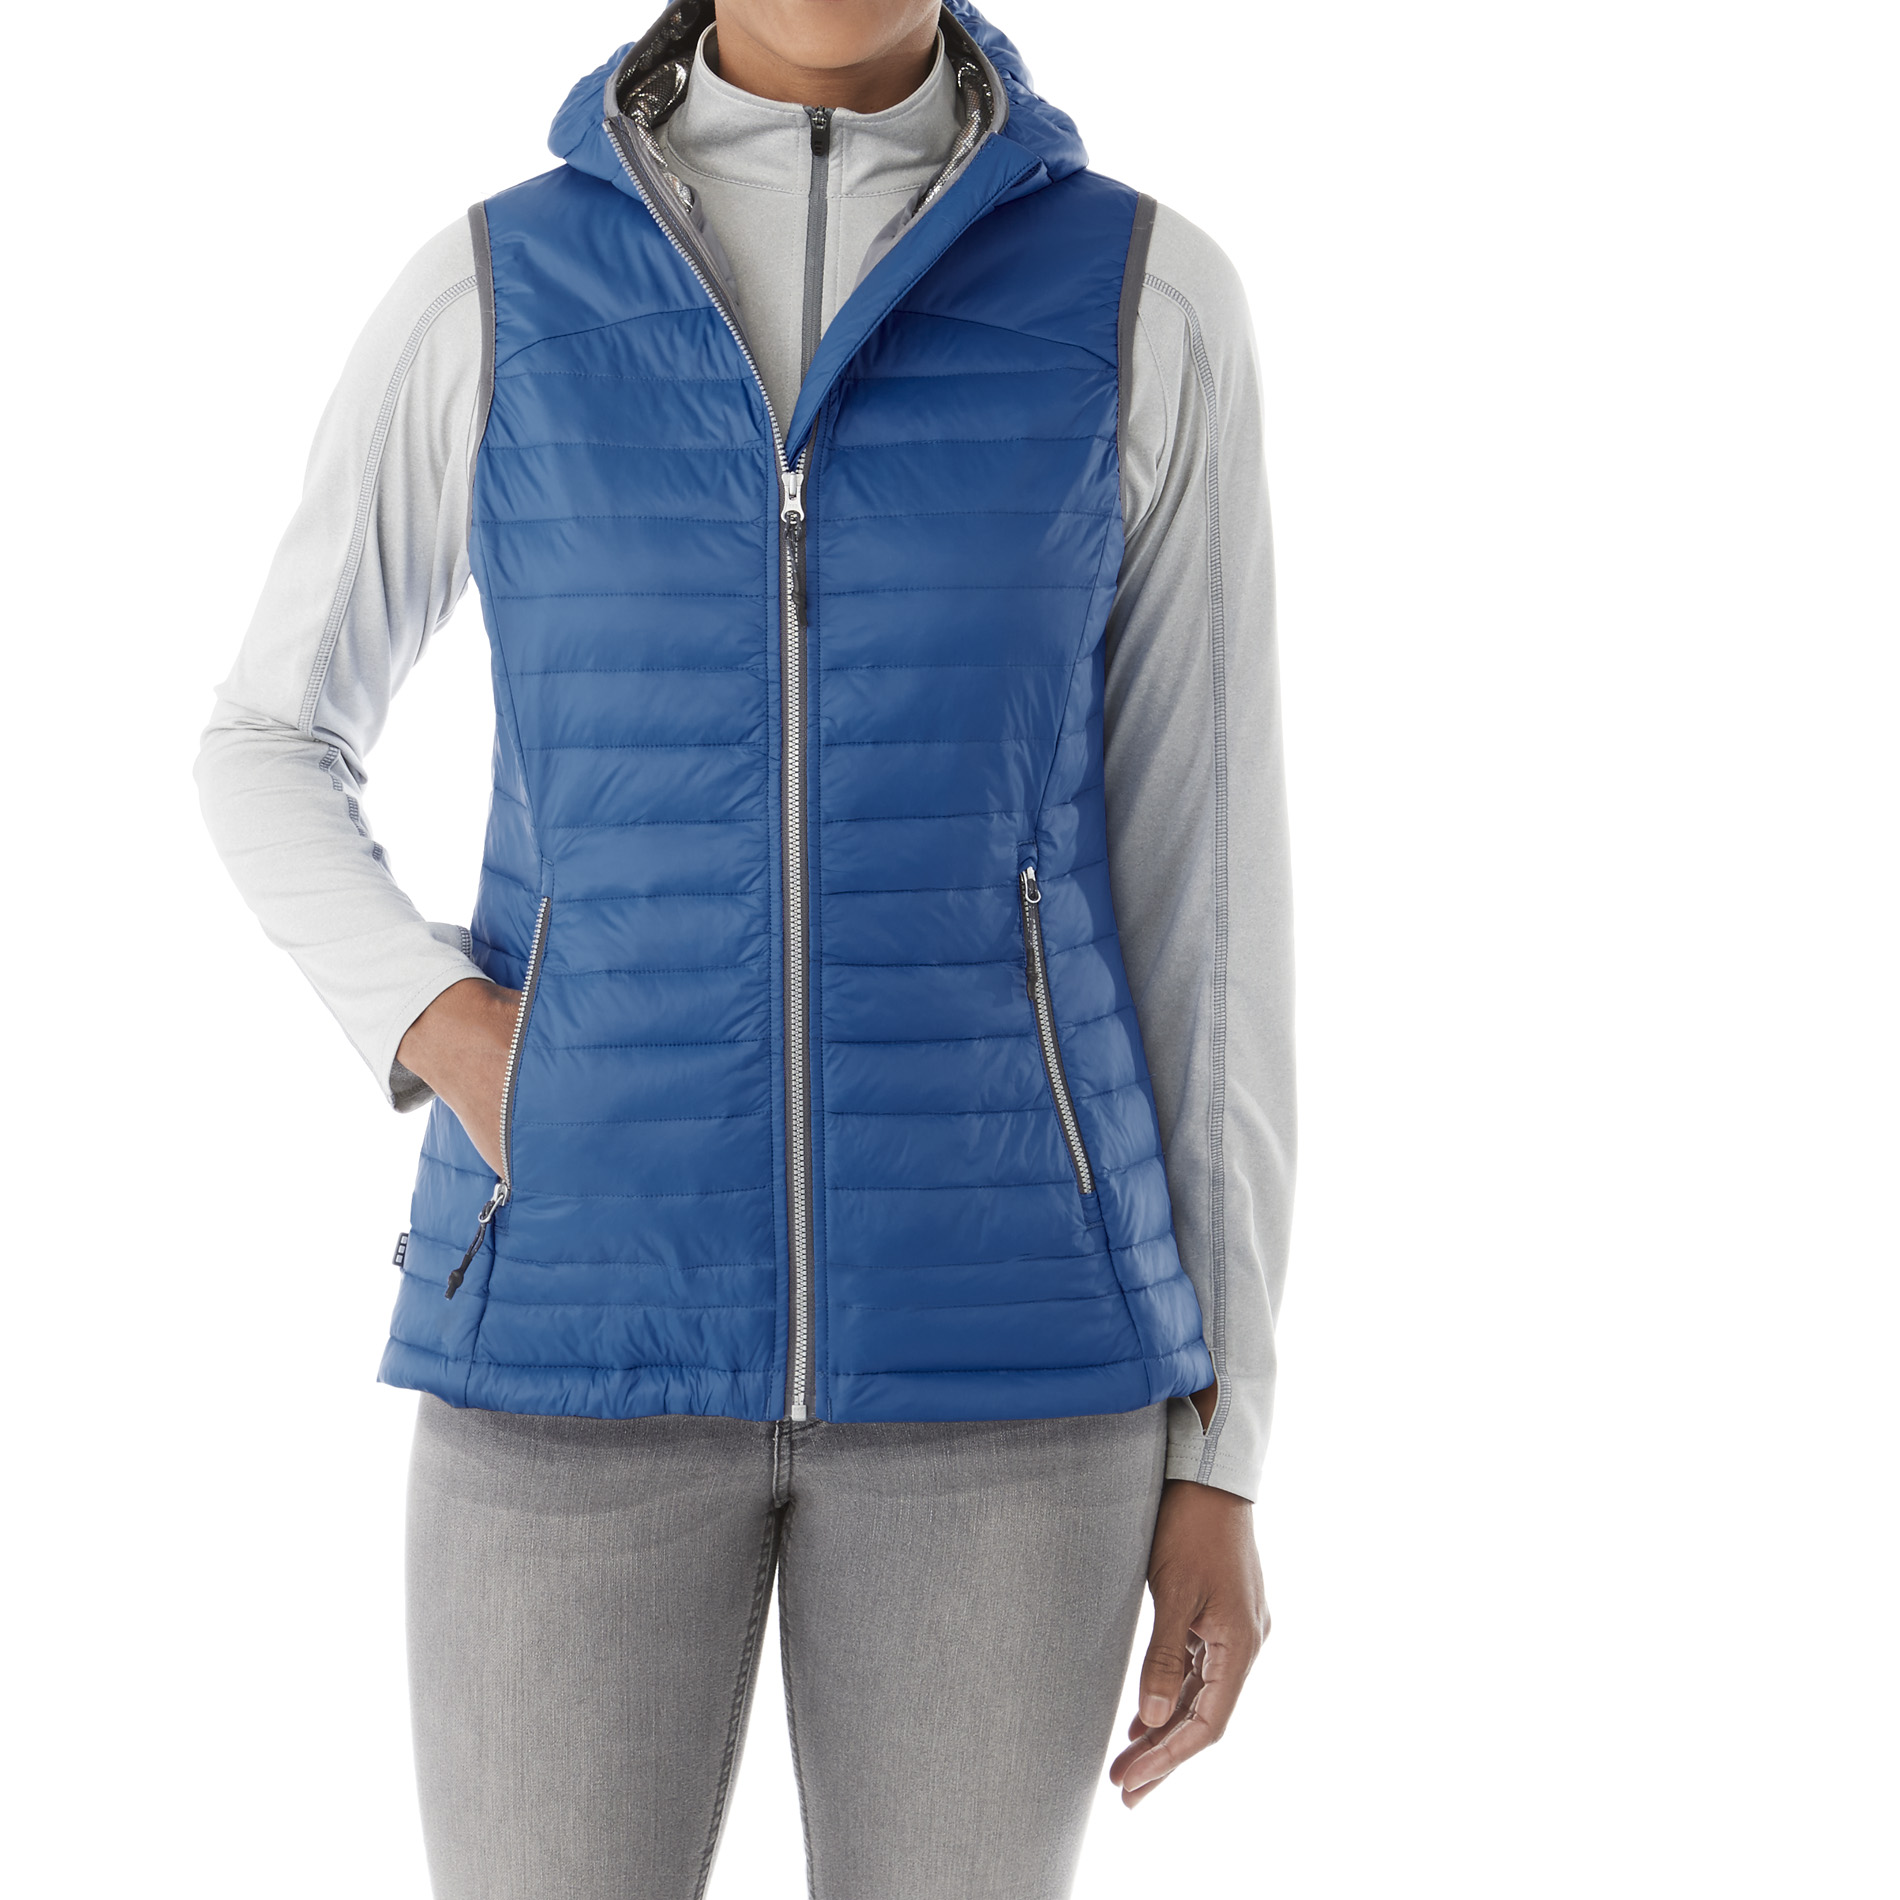 Trimark TM99556 - Women's JUNCTION Packable Insulated Vest